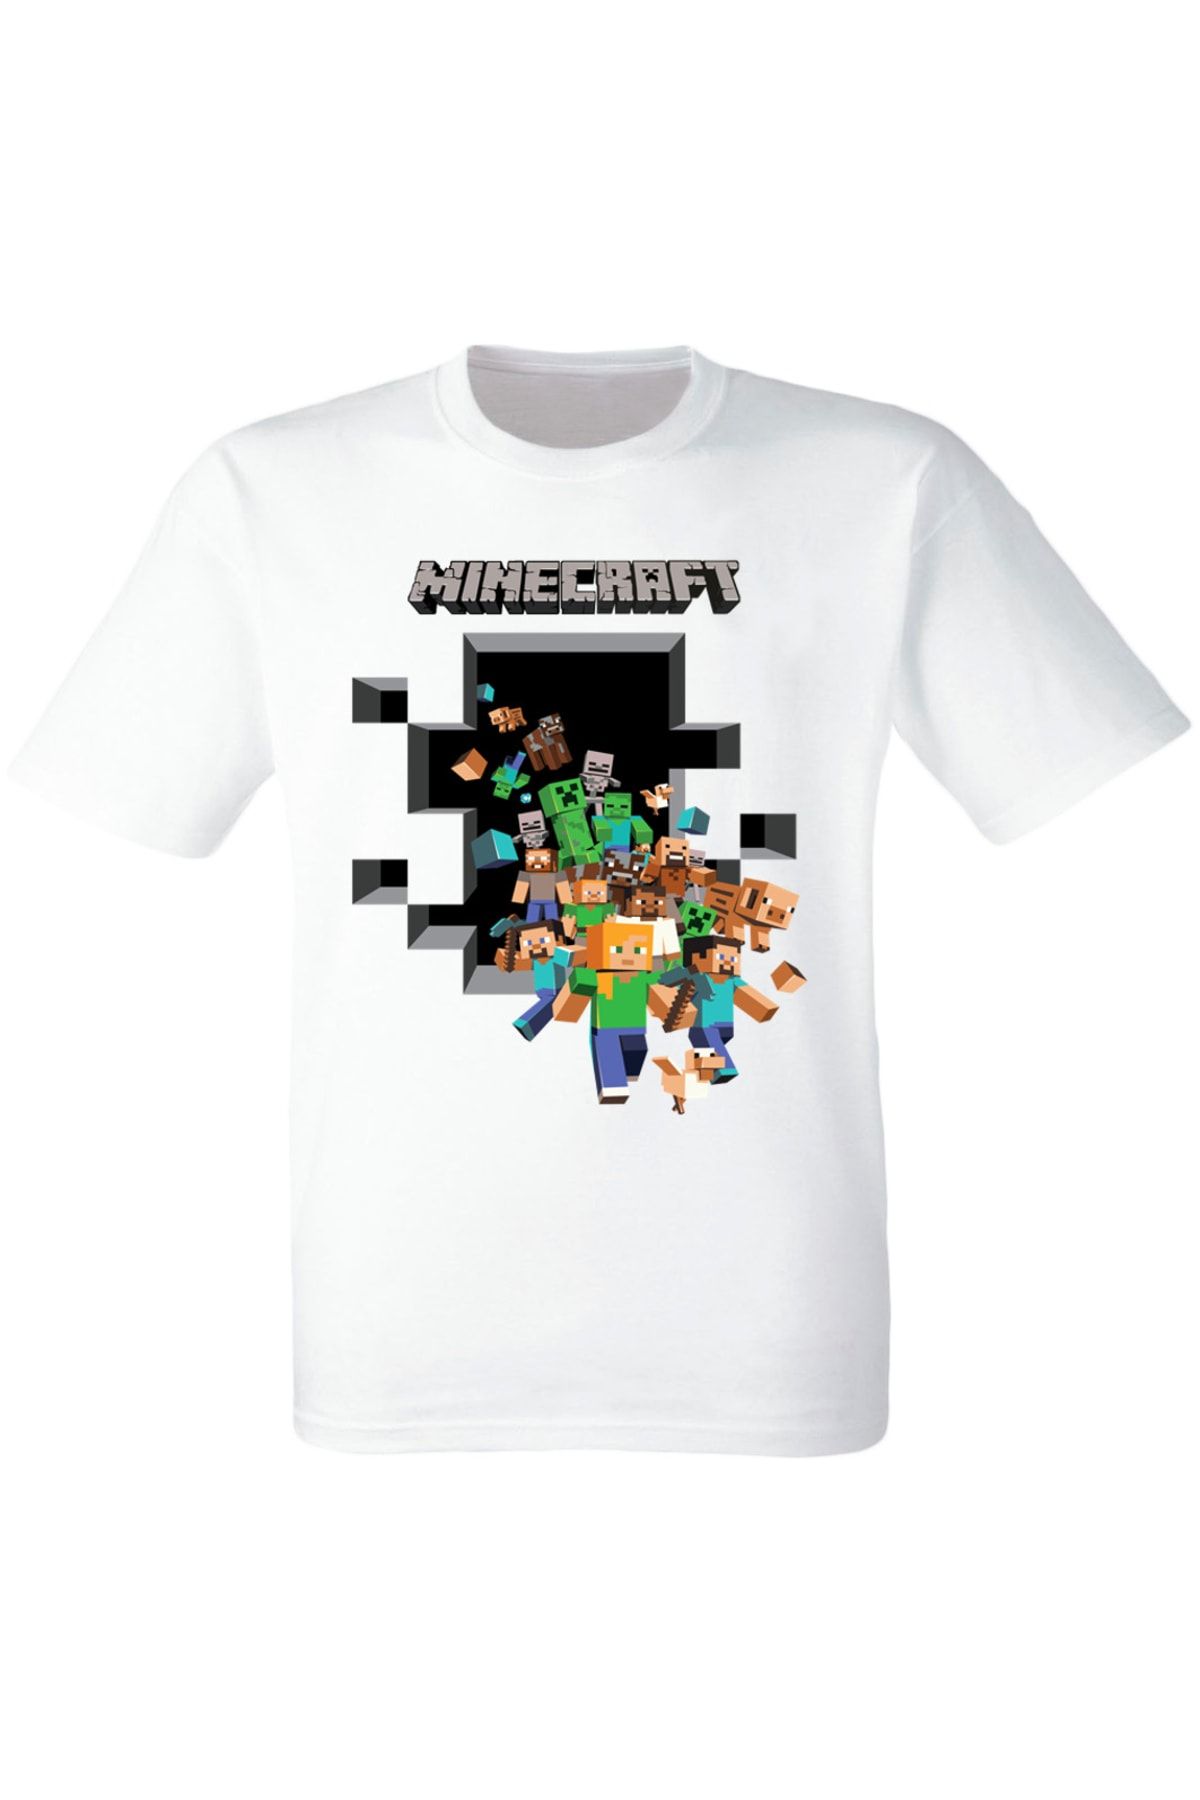 Minecraft Harika Tasarım Minecraft Baskılı Çocuk Tişörtü